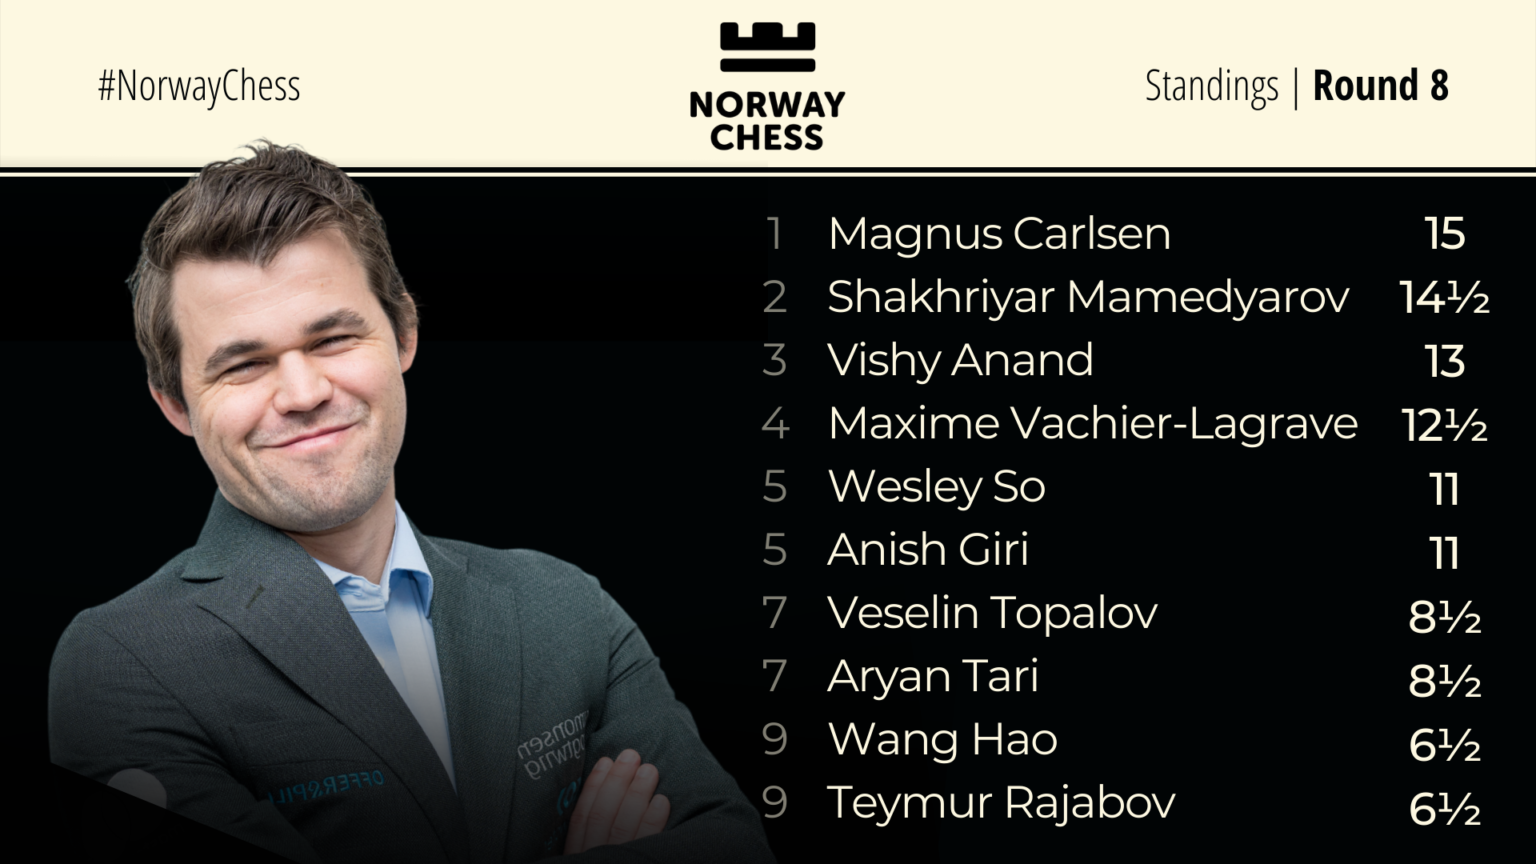 Norway Chess Standings Round 8